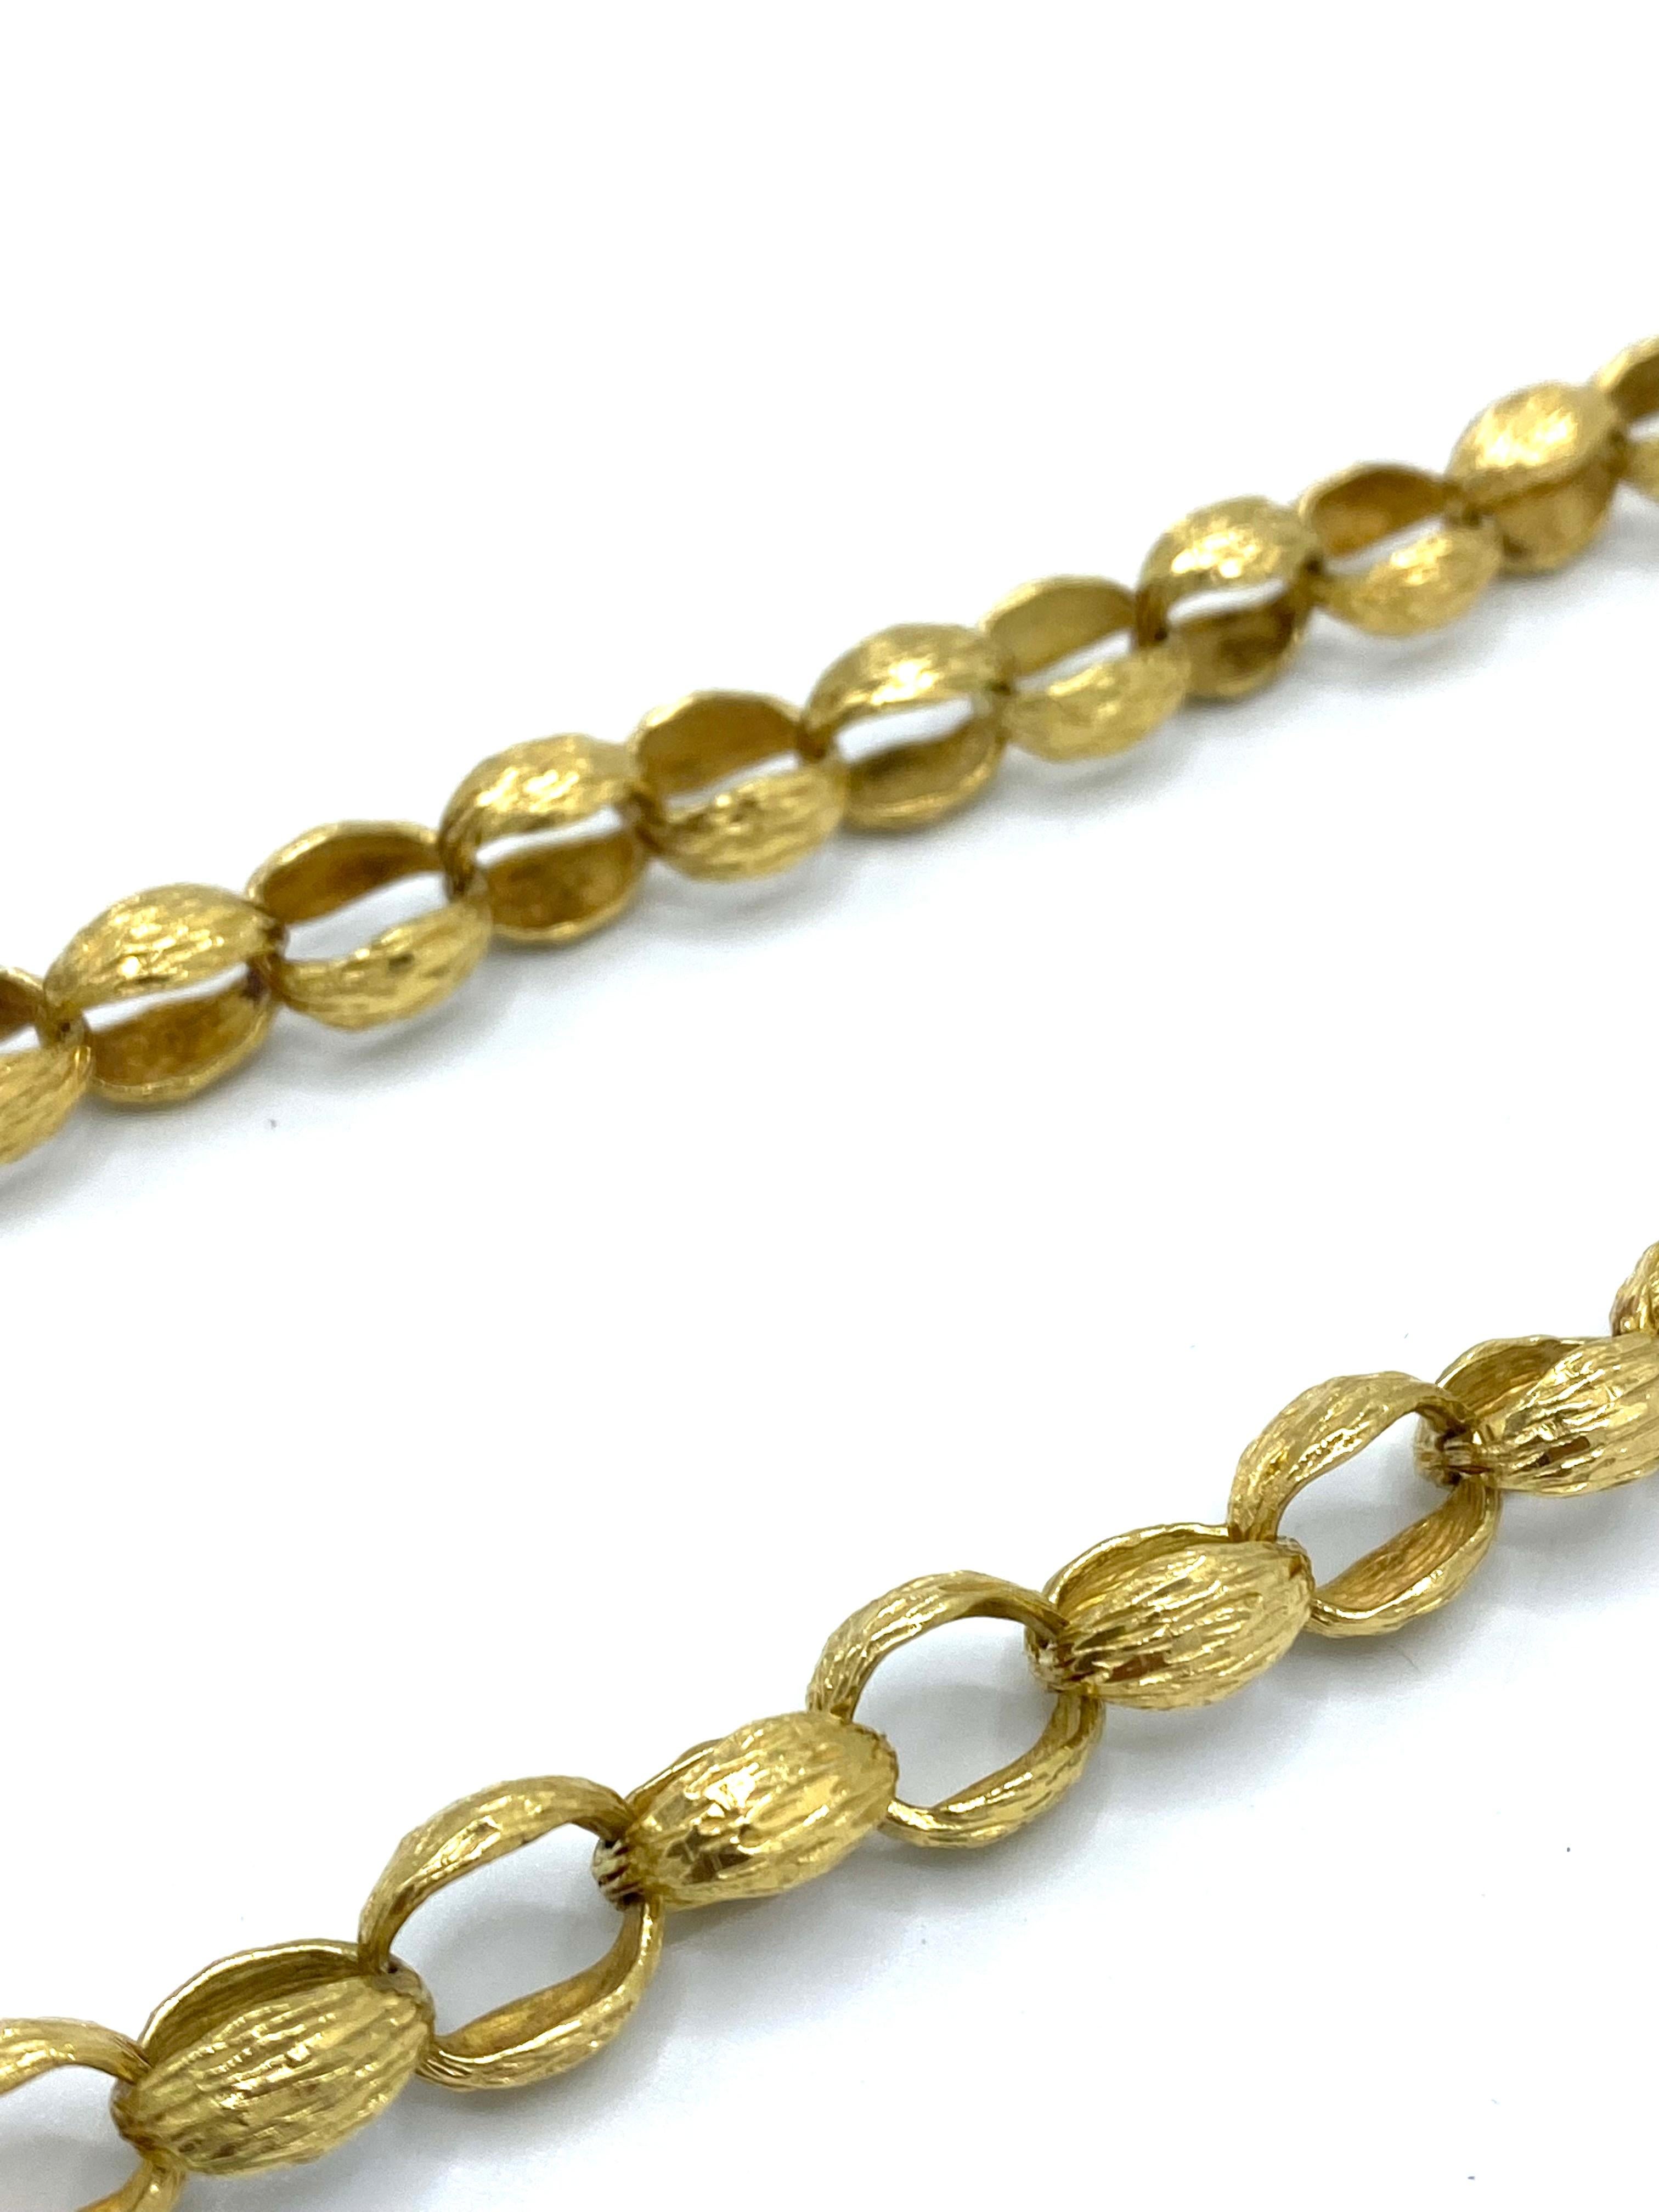 Einzelheiten zum Produkt:

Die Halskette und die Brosche sind aus 18-karätigem Gelbgold gefertigt, mit strukturierter Oberfläche und Blumenmotiv.

Die Halskette ist 34 Zoll lang und 5/16 Zoll breit. Das Gewicht beträgt 113.2 Gramm.
Der Anhänger ist